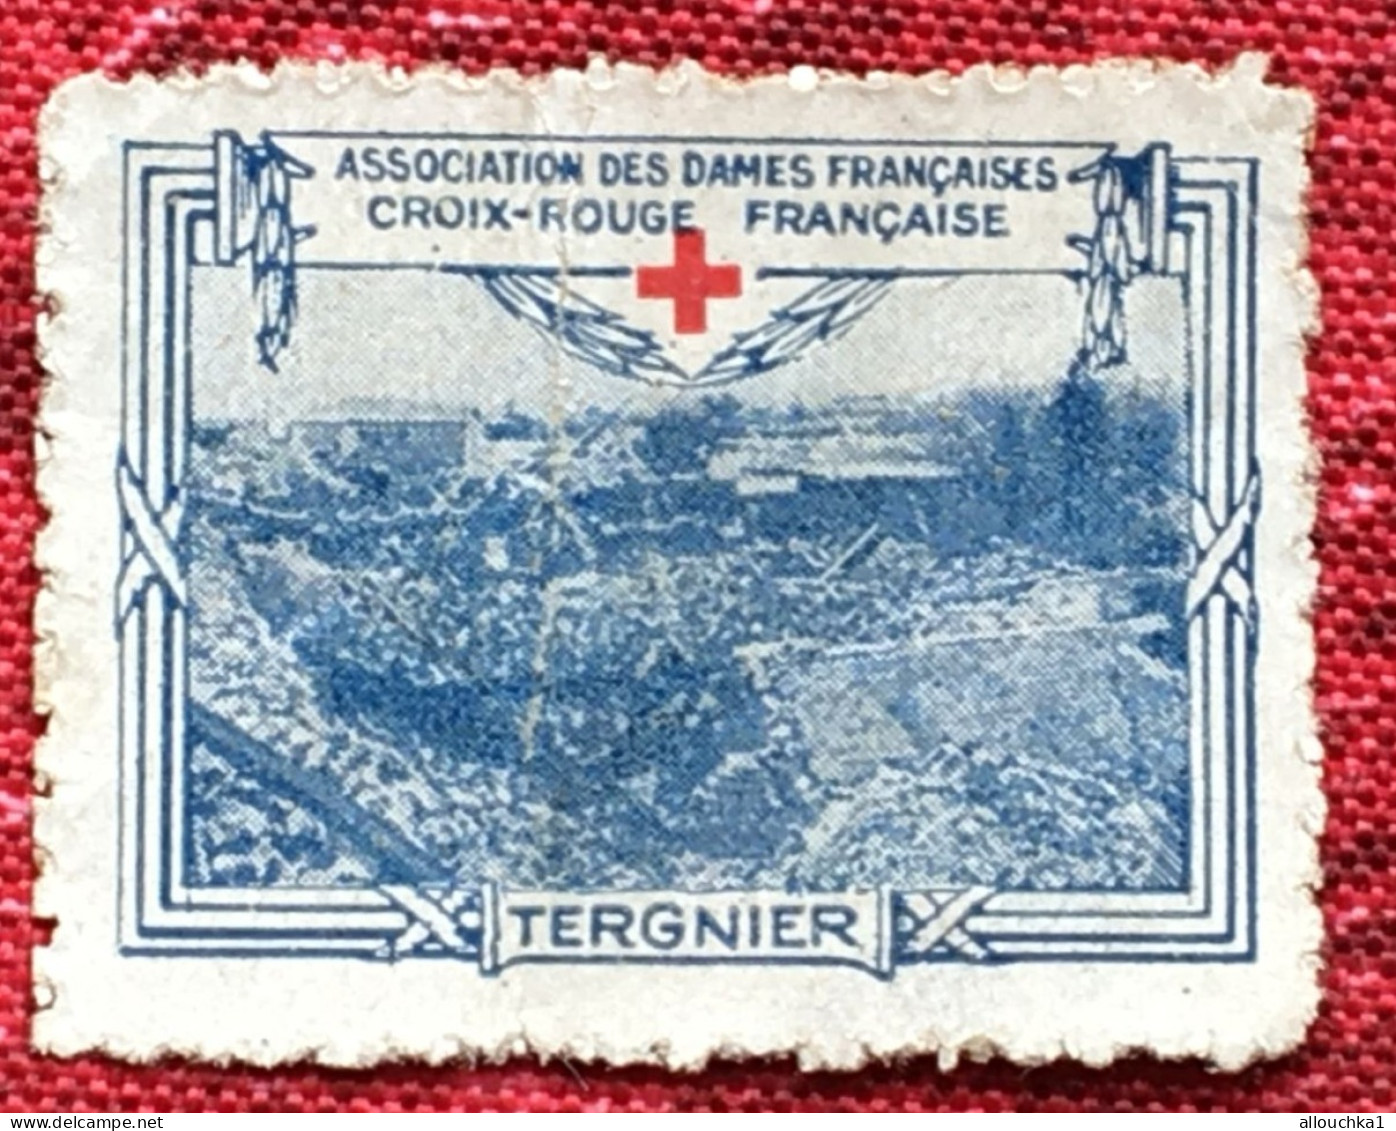 Croix Rouge Française Association Dames Françaises Tergnier -Red Cross-Timbre-Vignette-Erinnophilie-Stamp-Sticker-Viñeta - Rode Kruis